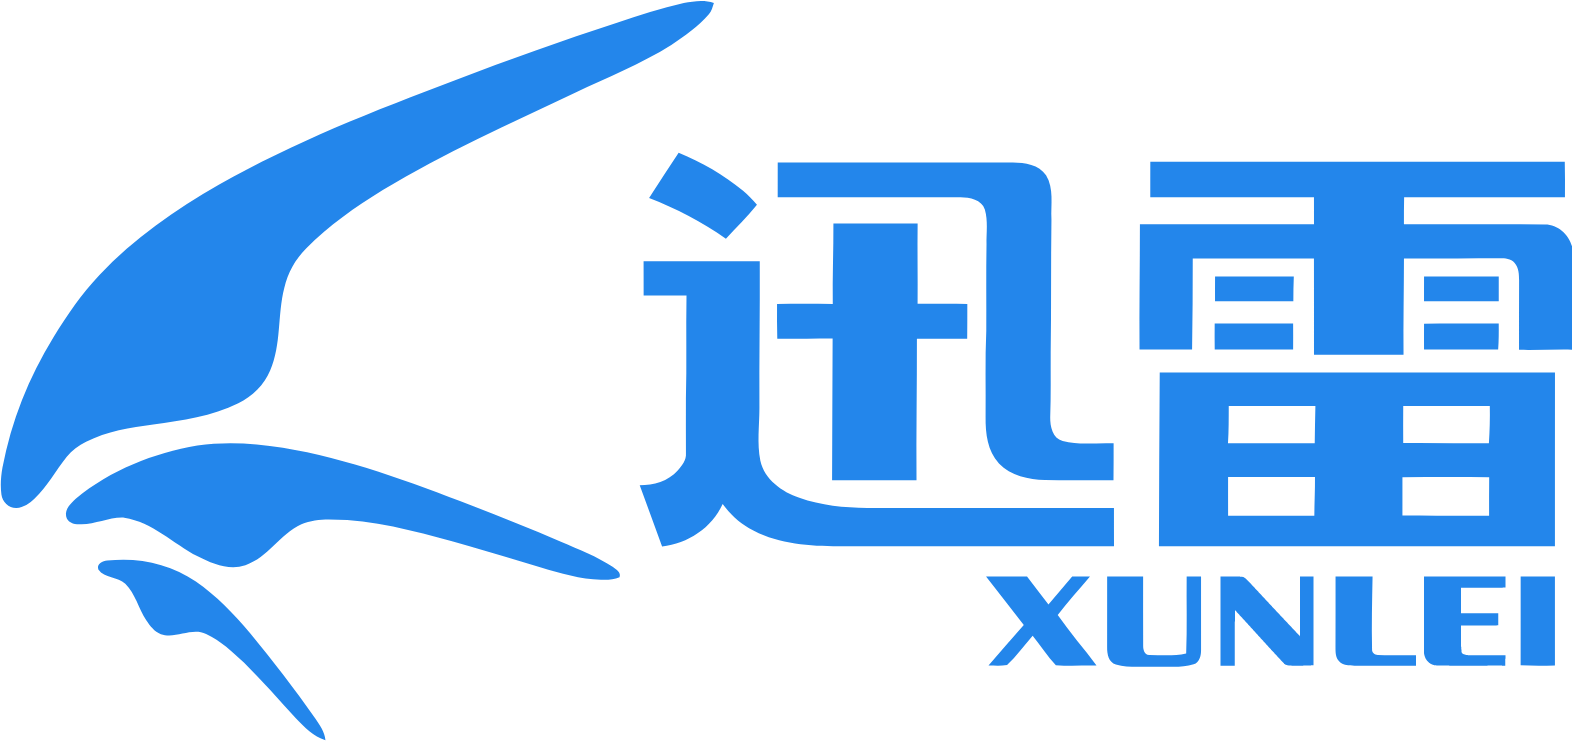 Xunlei logo large (transparent PNG)